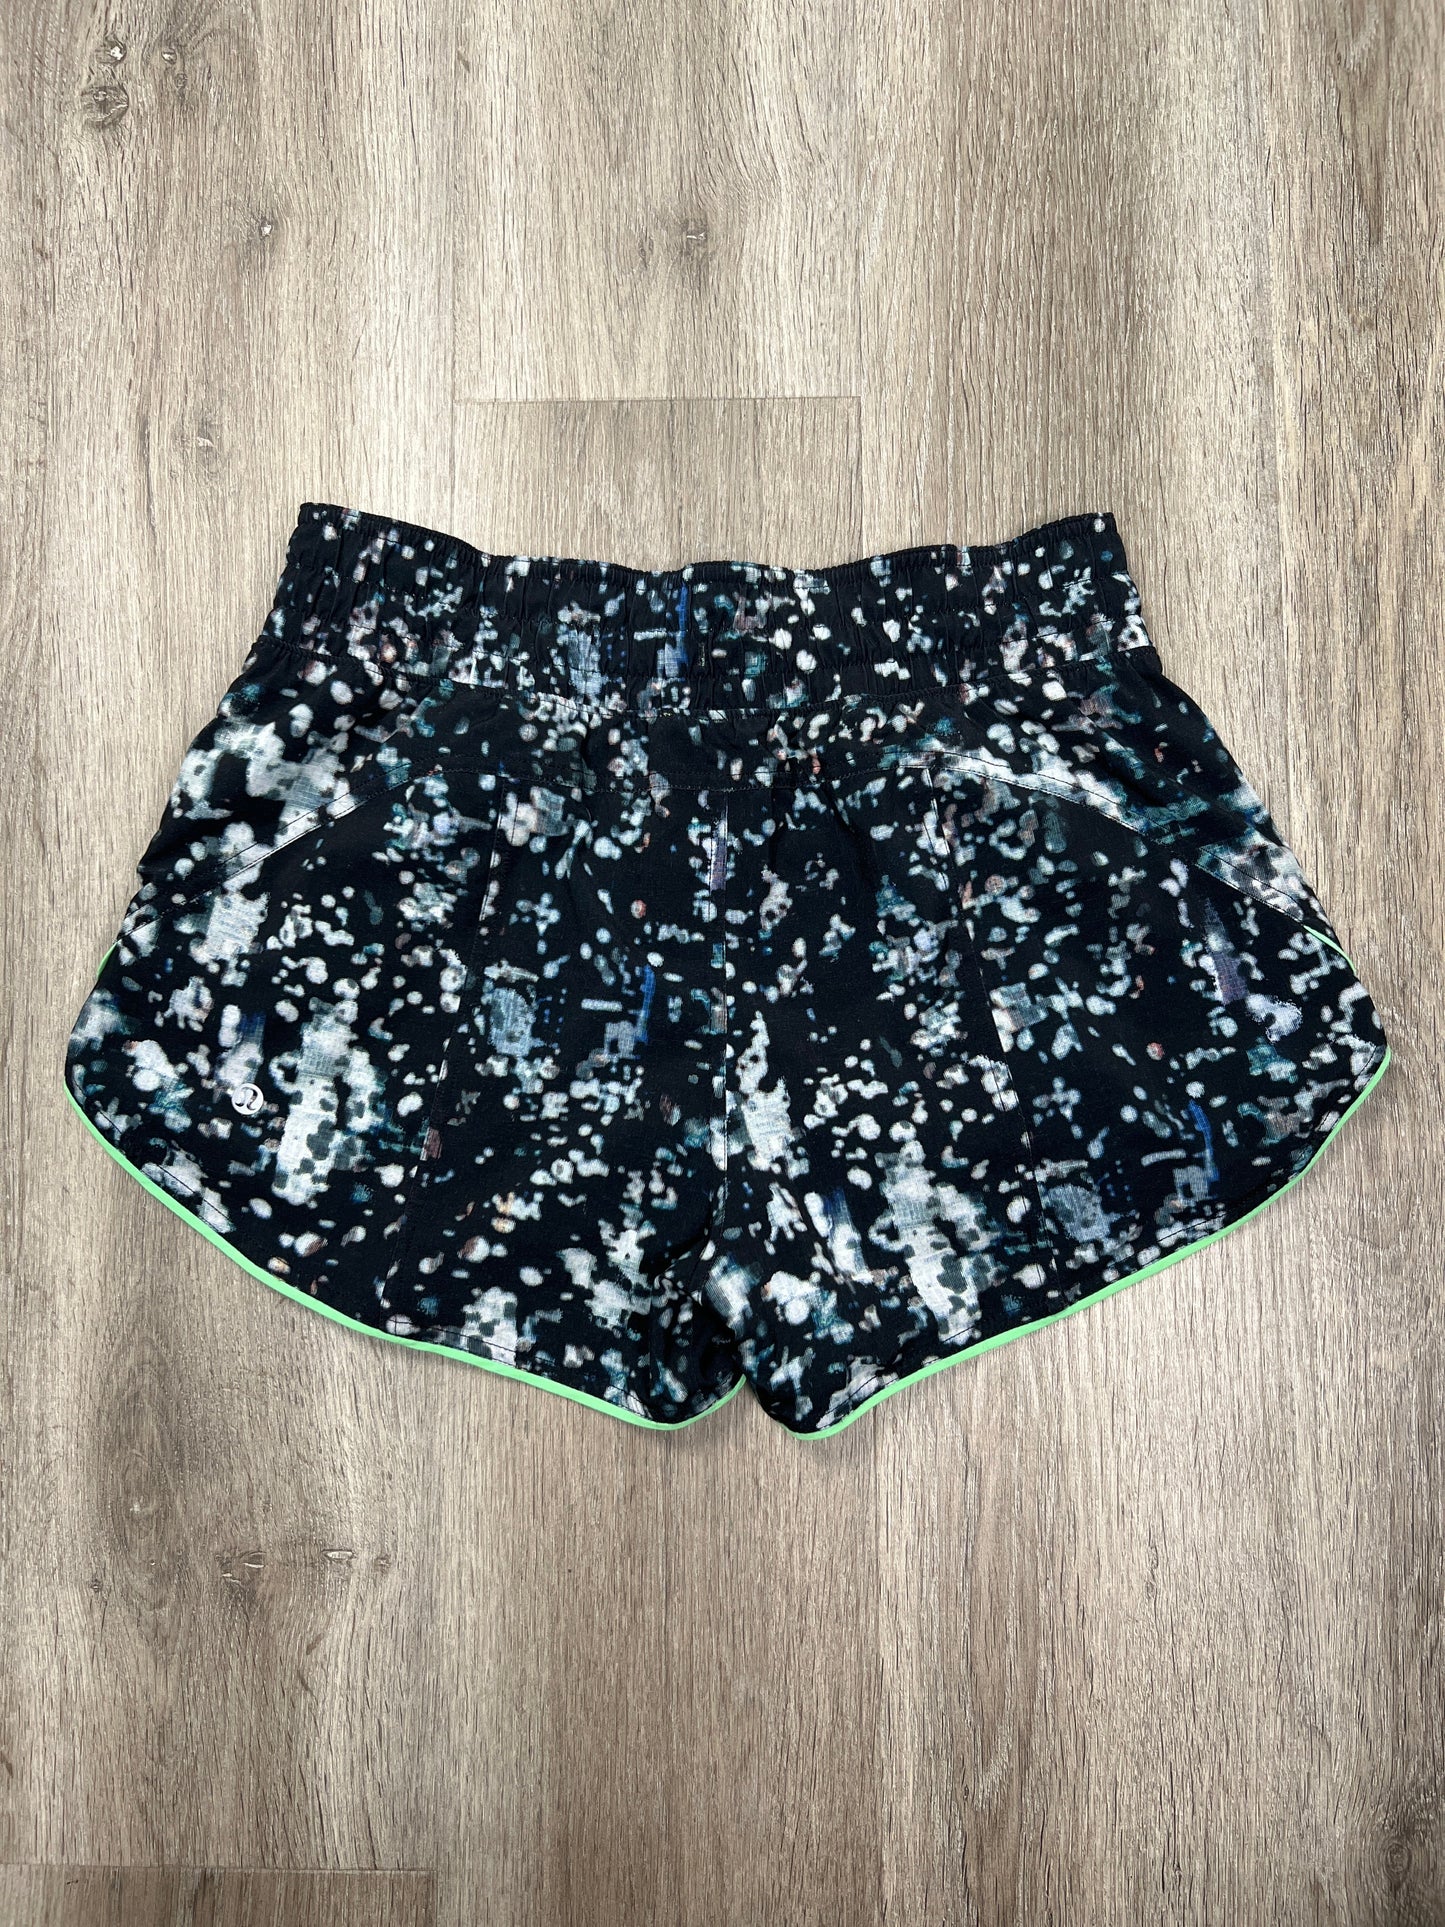 Black & Green Athletic Shorts Lululemon, Size S